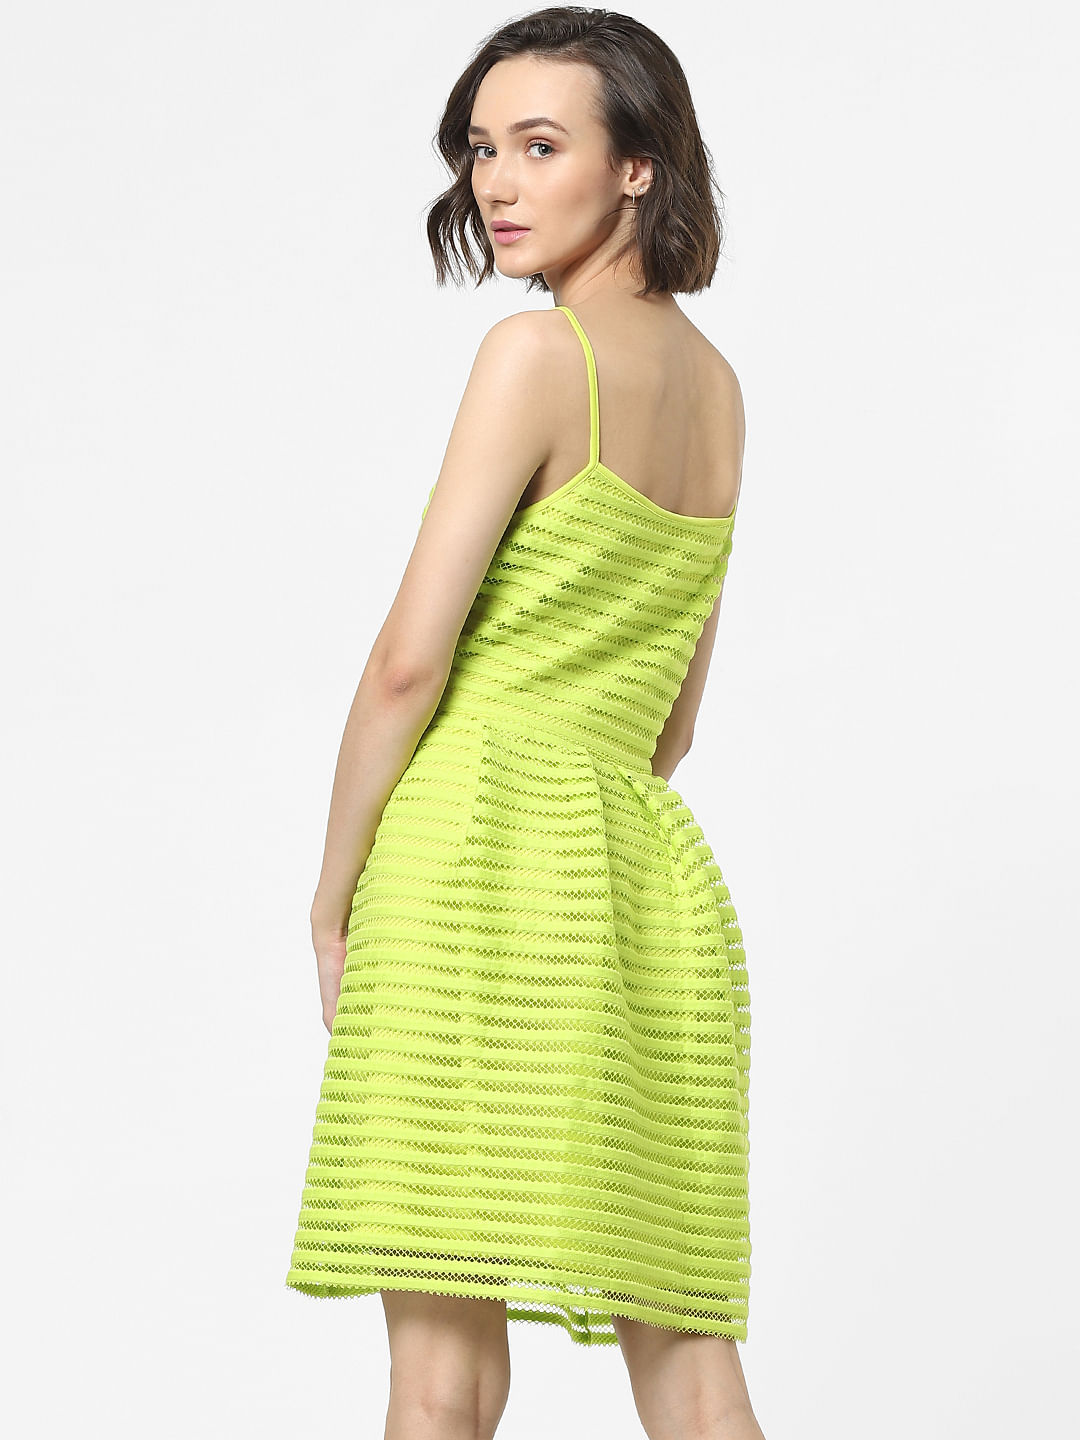 Camila Coelho Reyna Maxi Dress in Lime Green | REVOLVE